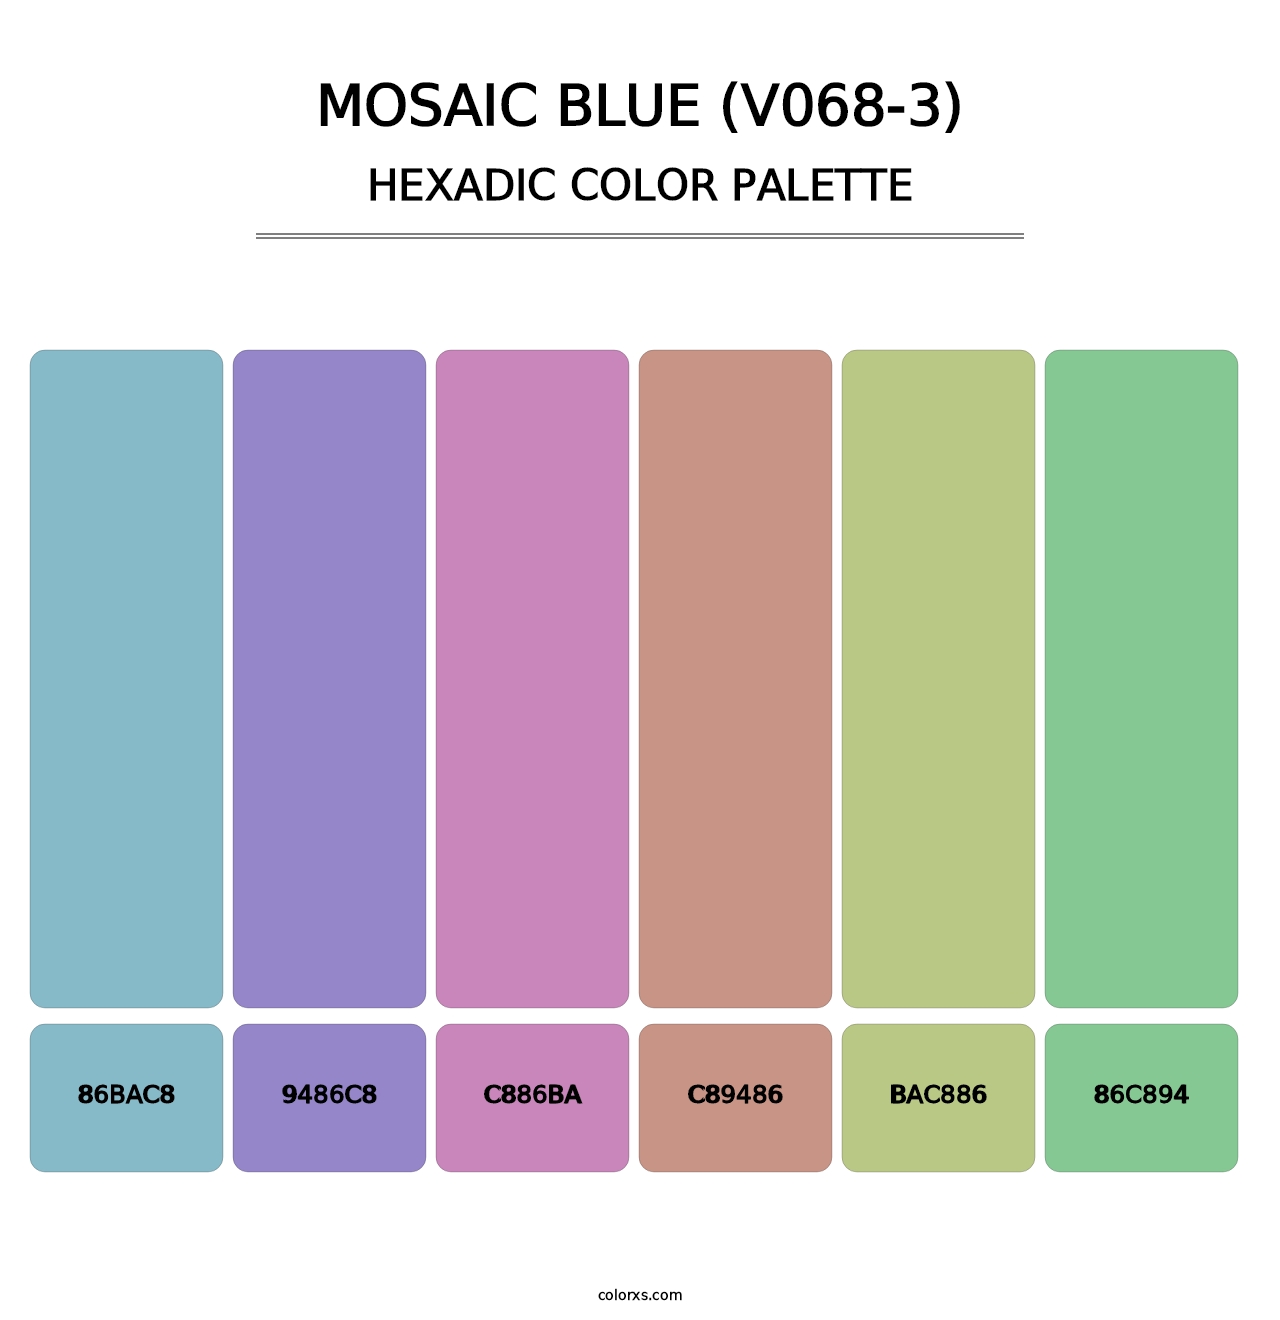 Mosaic Blue (V068-3) - Hexadic Color Palette